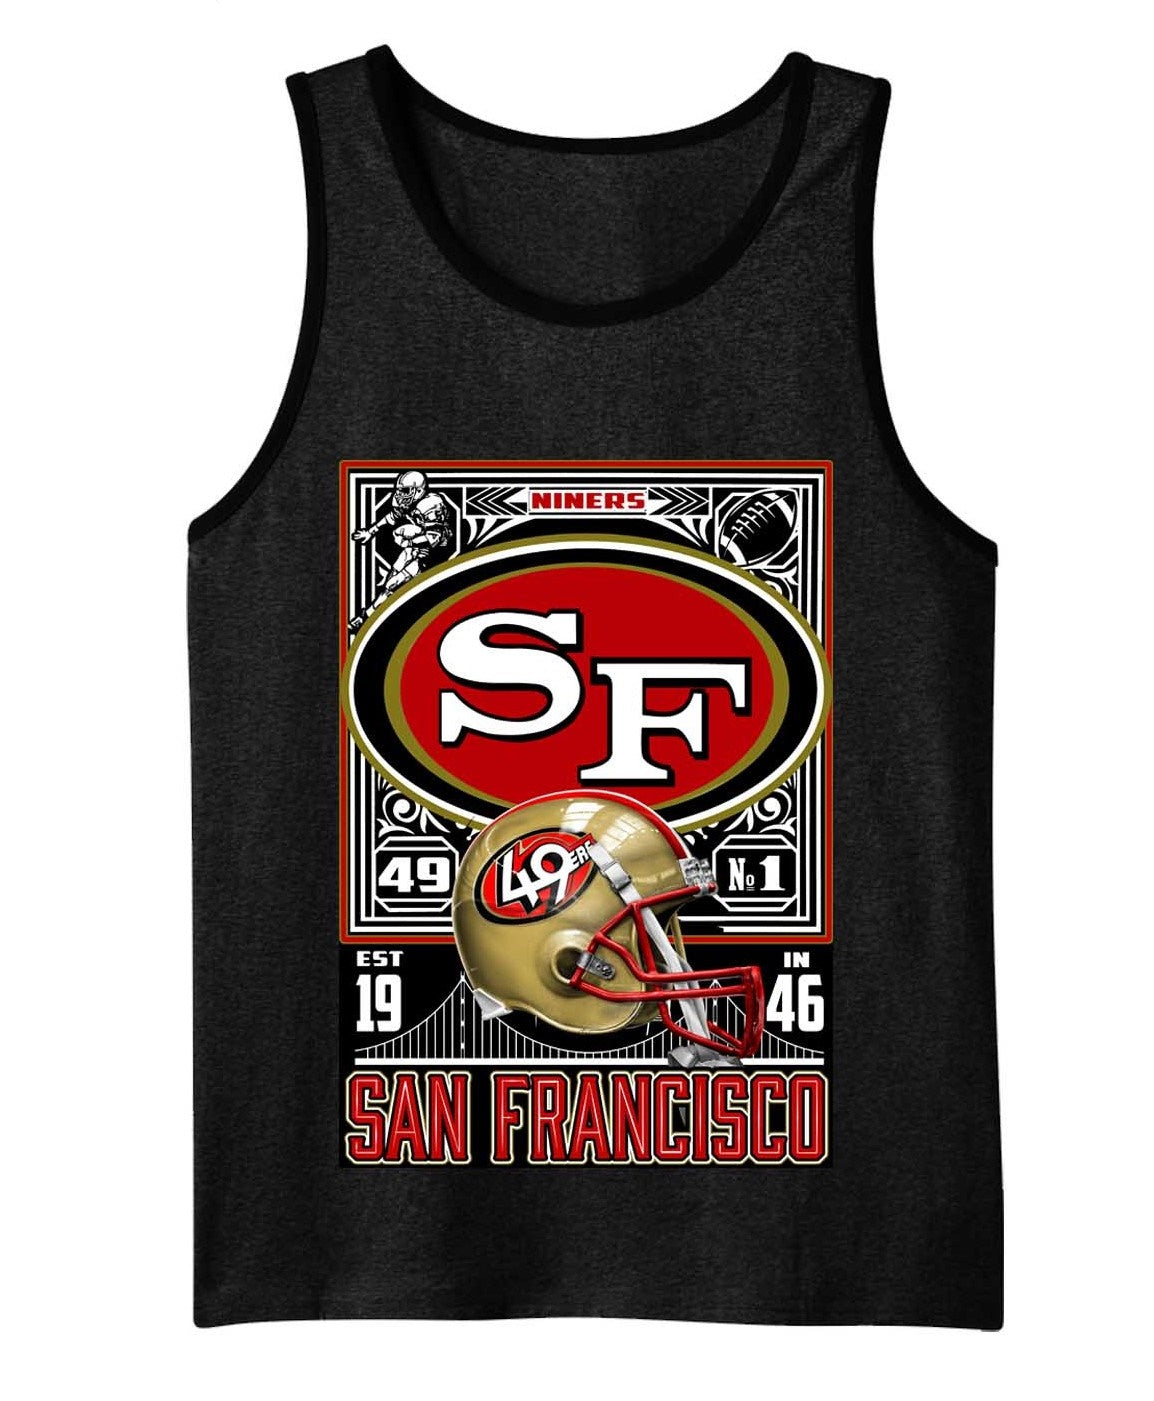 San Francisco 49ers Est 1946 Graphic Tank Top - Craze Fashion